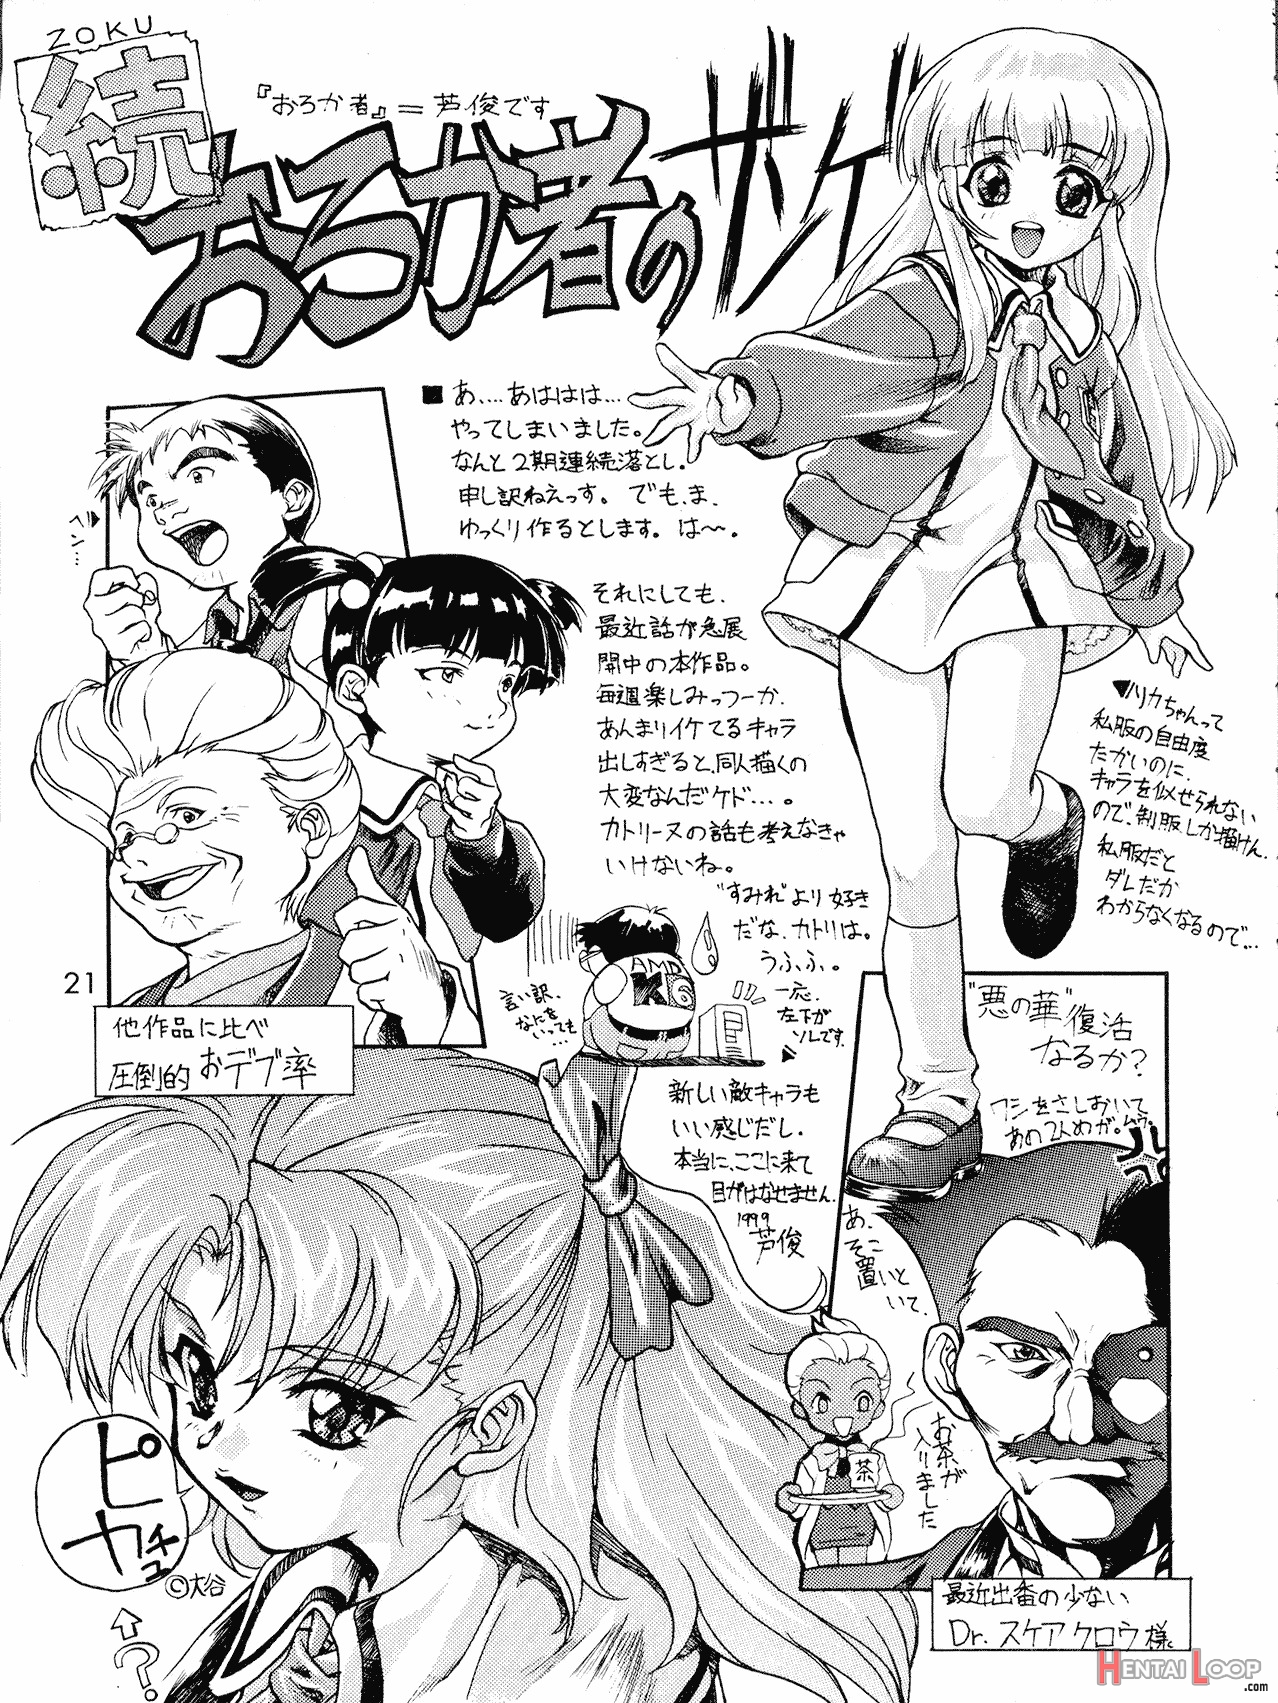 Kanzen Nenshou 4 page 21